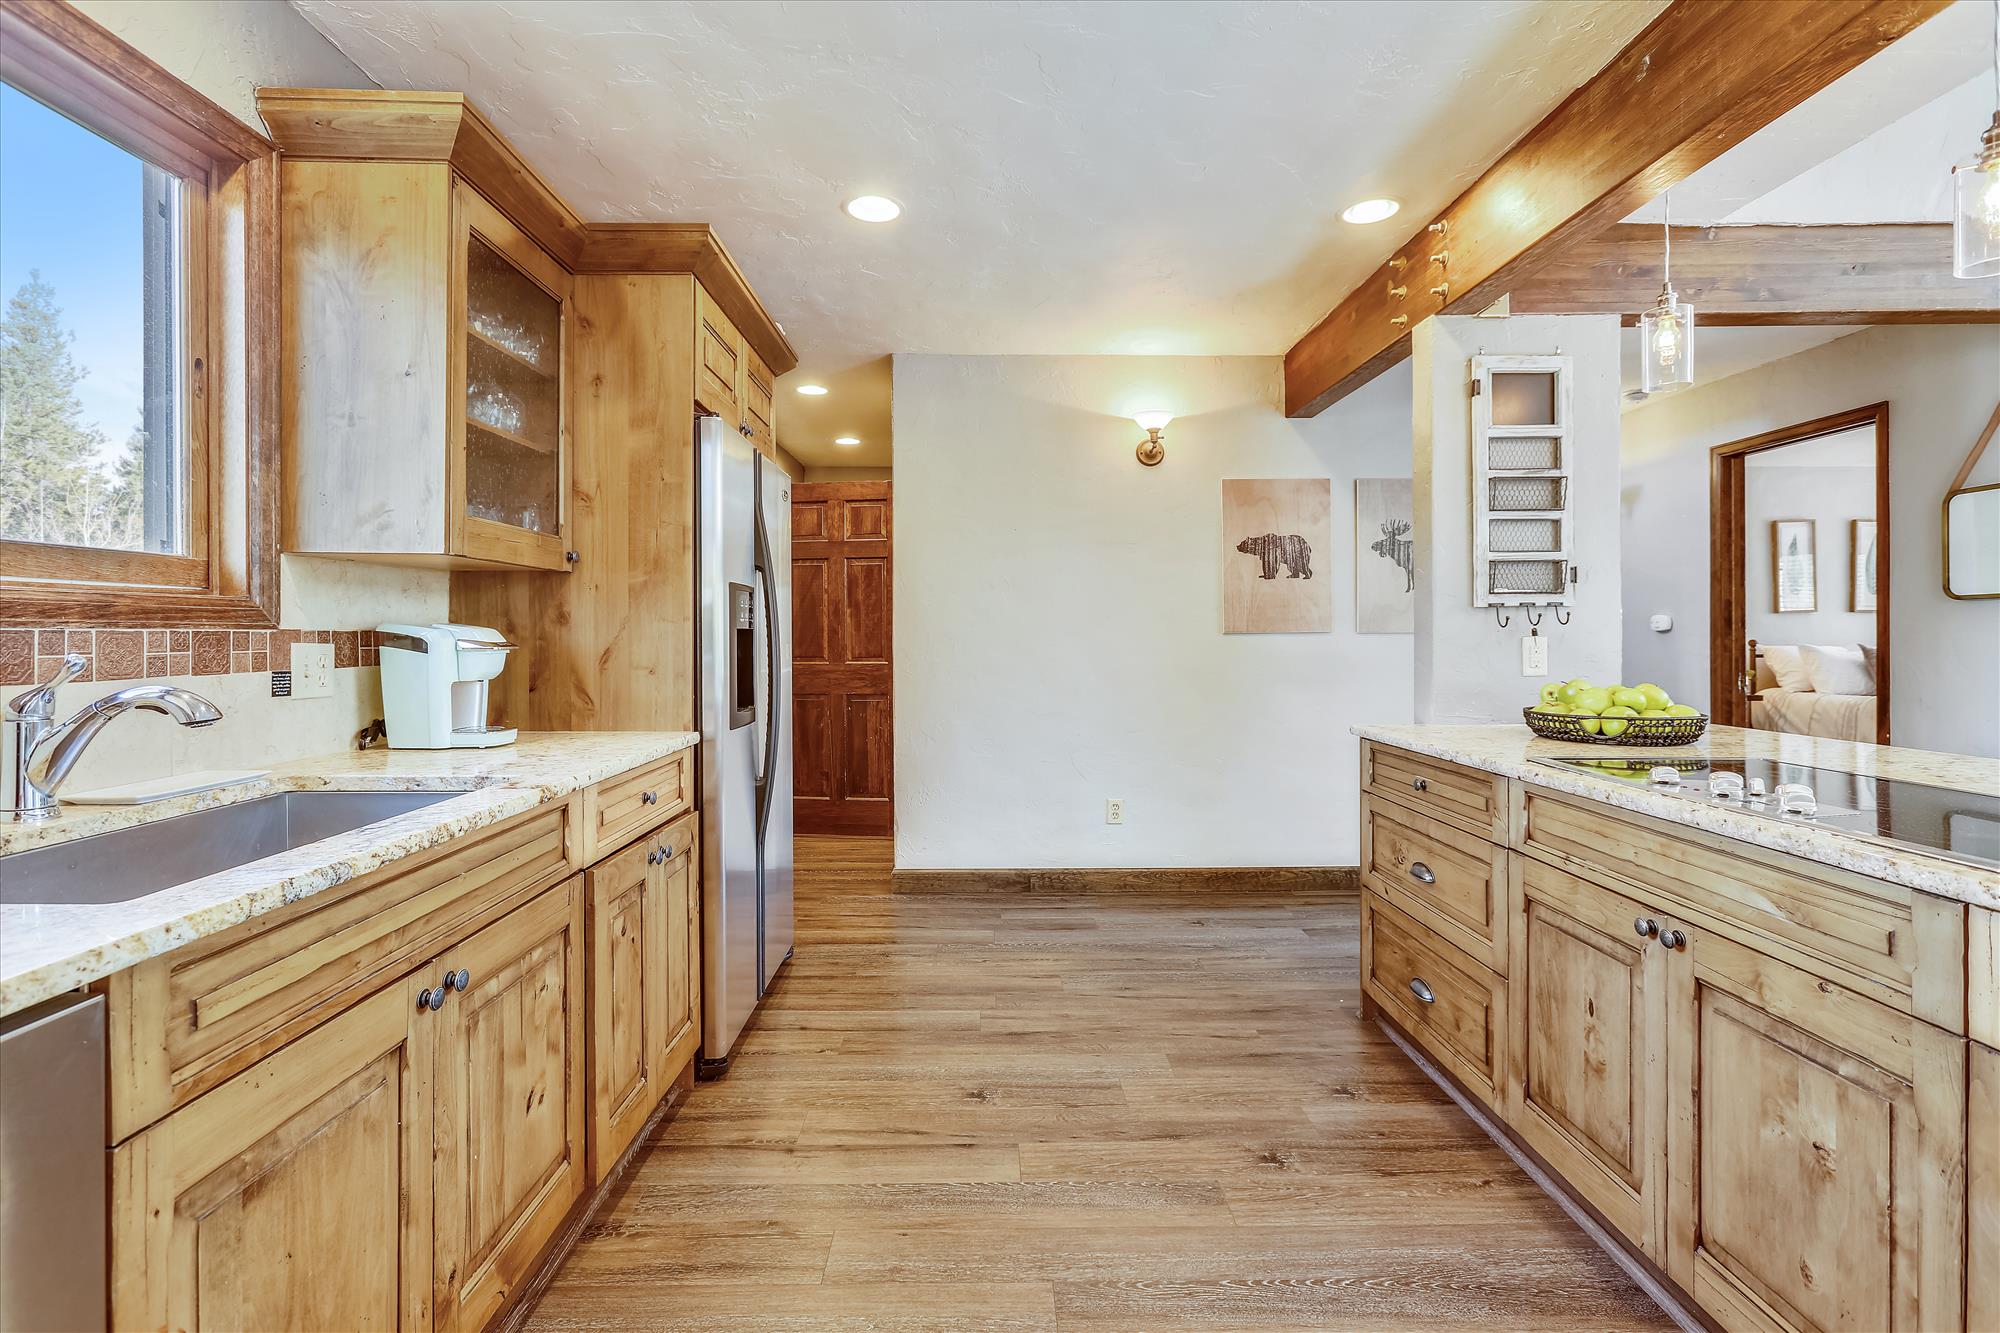 Additional kitchen view - Calderon De La Breck Breckenridge Vacation Rental